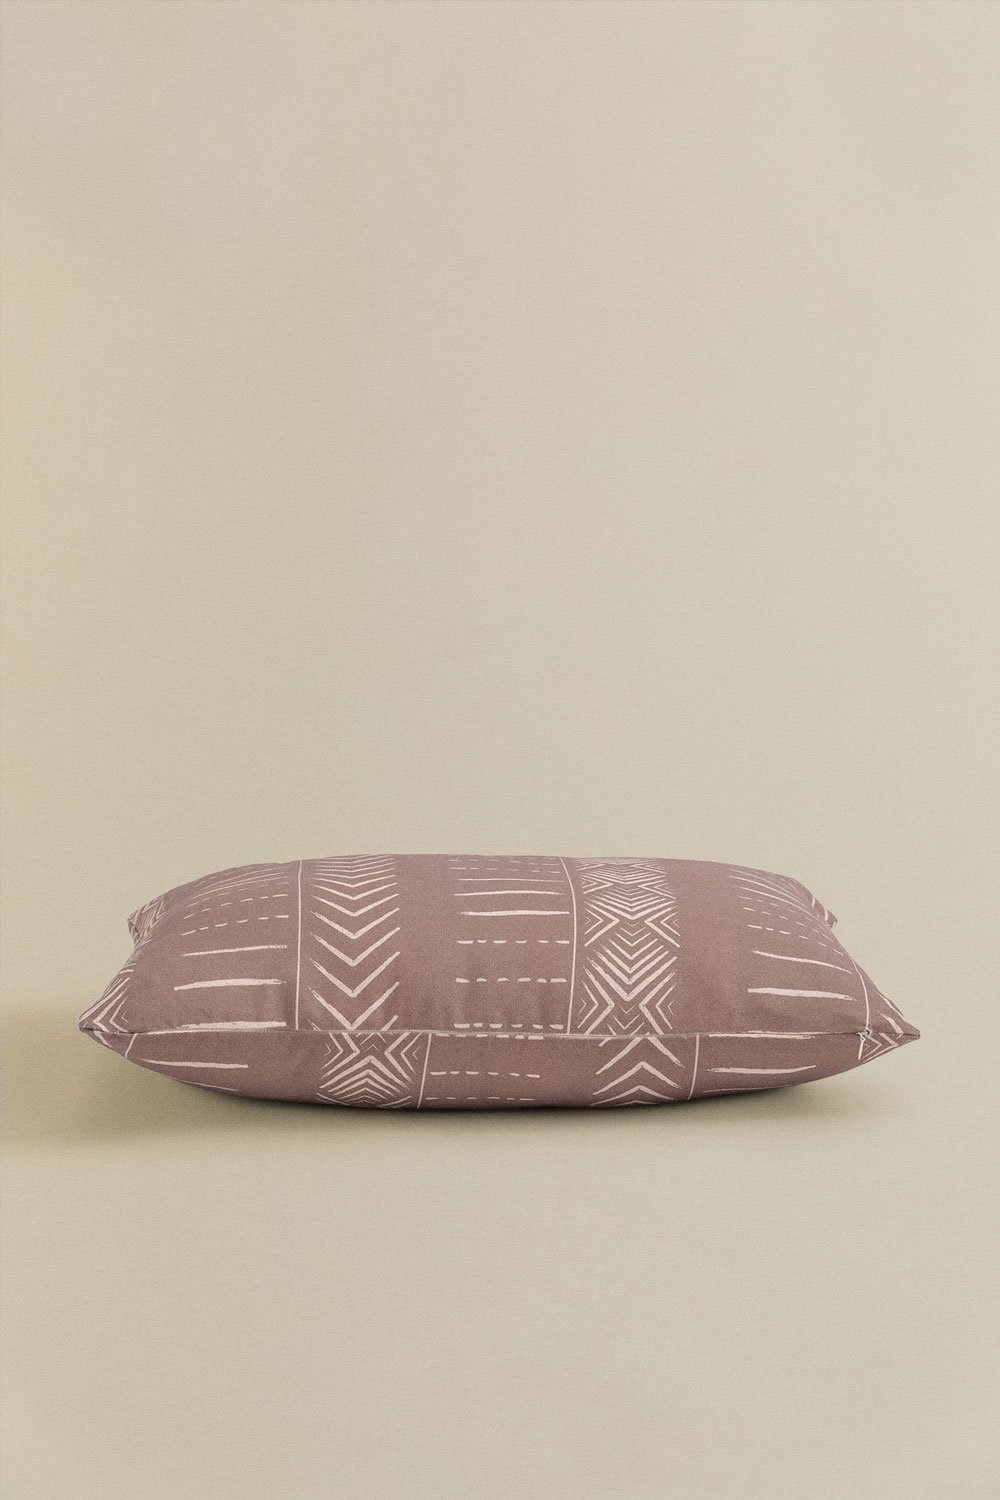 Housse de coussin rectangulaire en coton (40x60cm) Vorax Style, image de la galerie 2